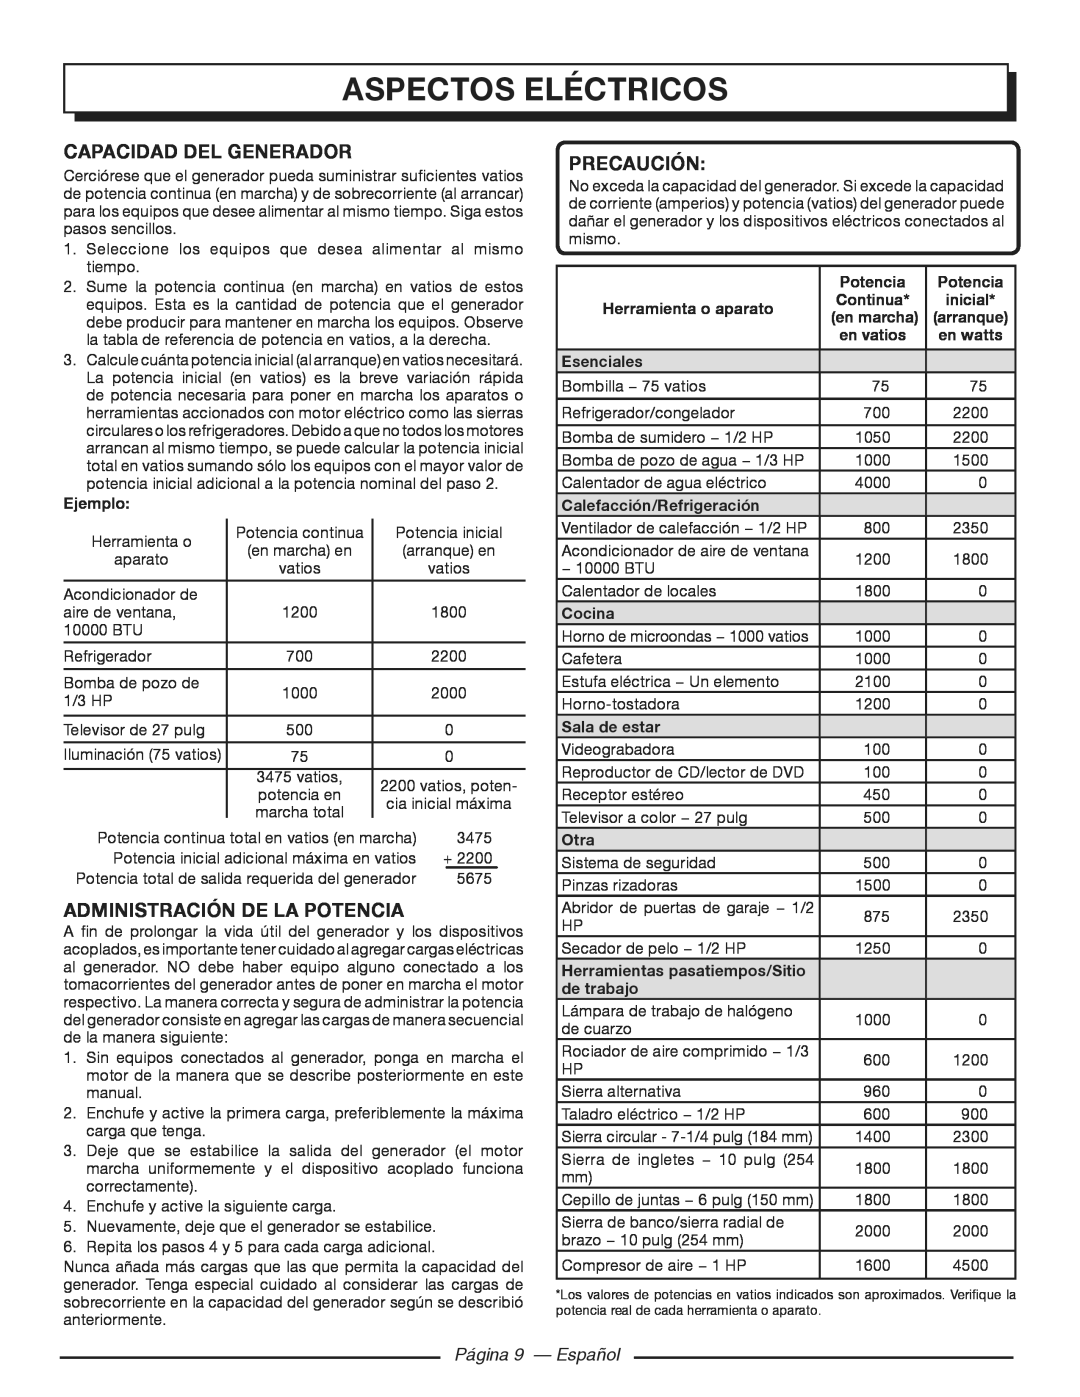 Homelite HGCA3000 Capacidad del generador, Administración De La Potencia, Página 9 - Español, aspectos eléctricos 